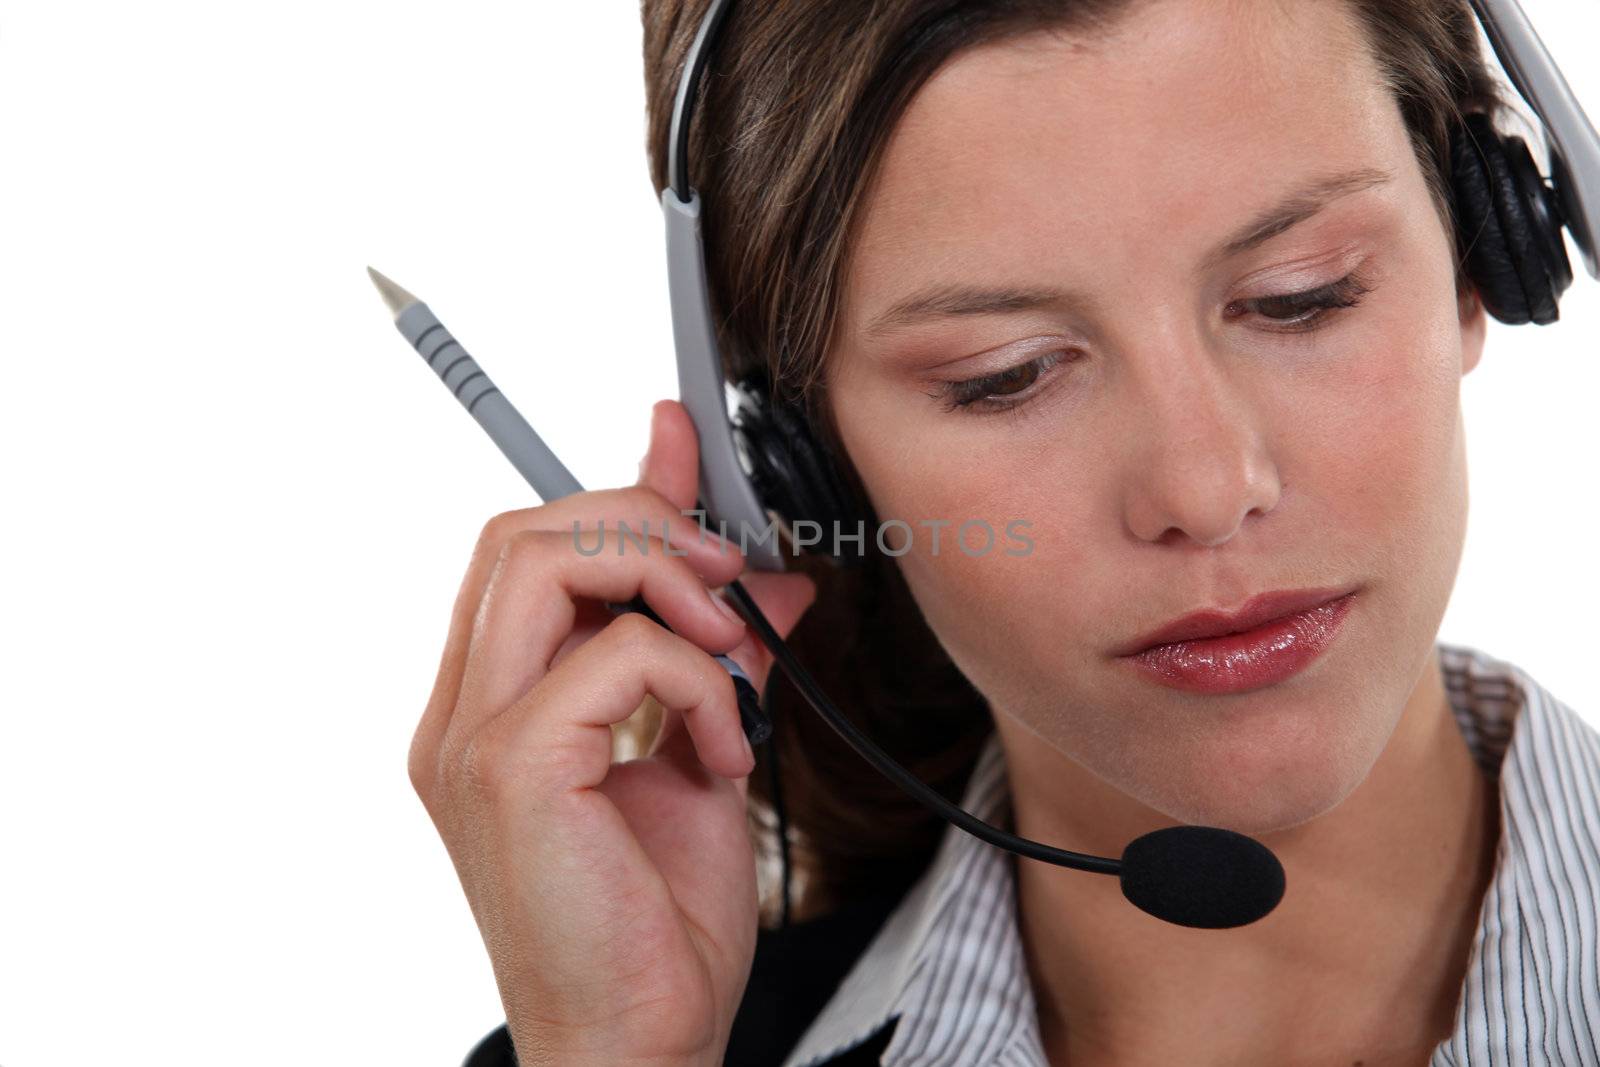 Brunette call-center worker listening to customer